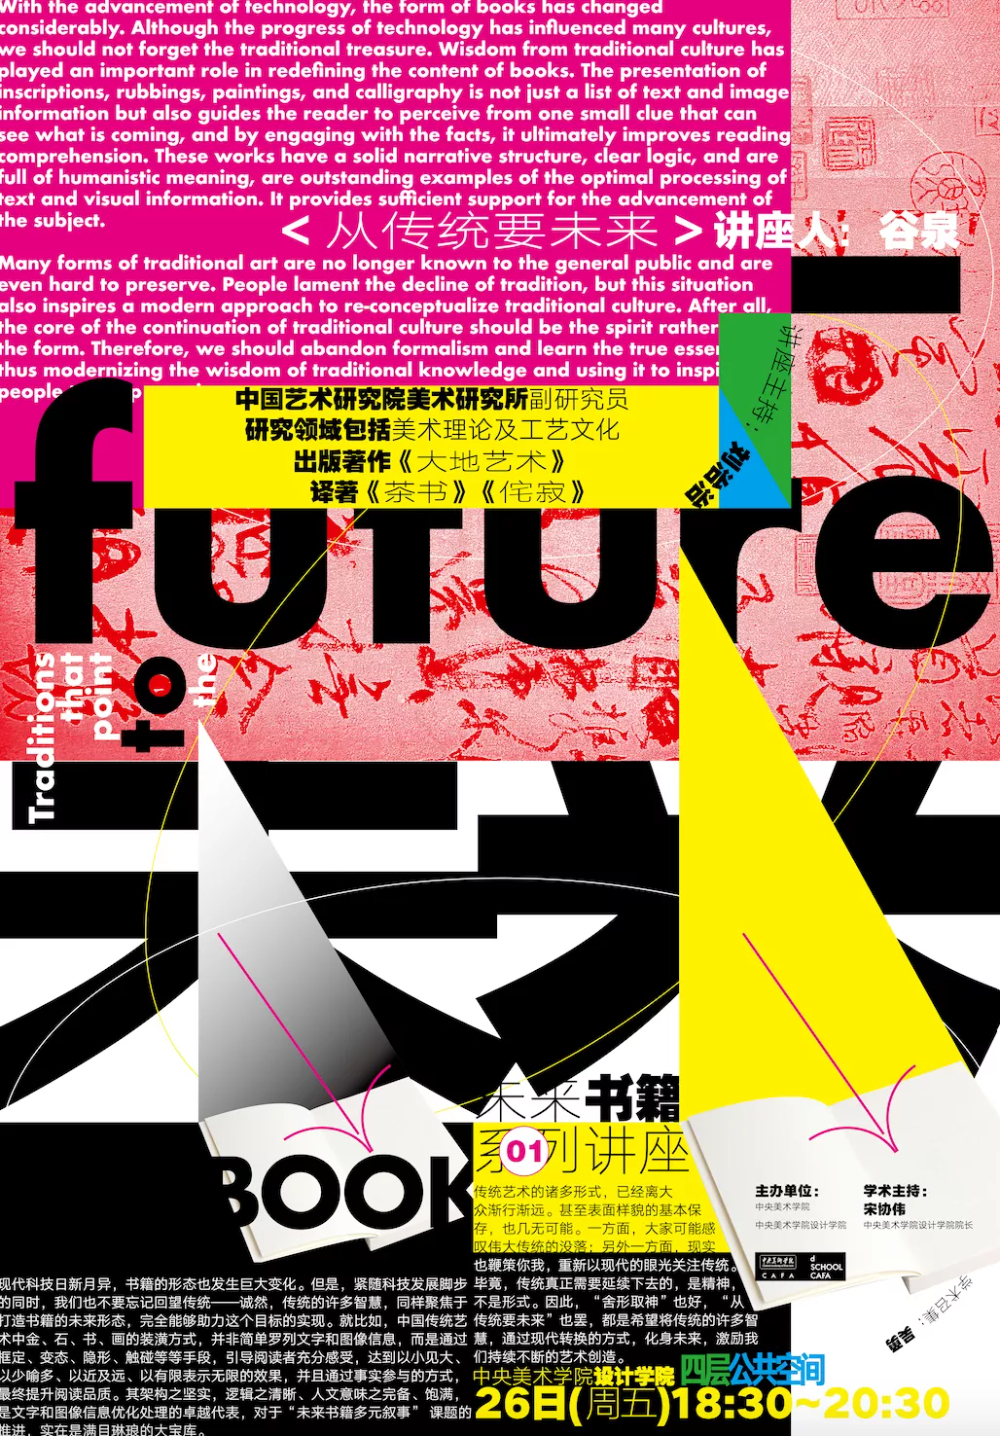 创意个性！一组中文活动海报设计